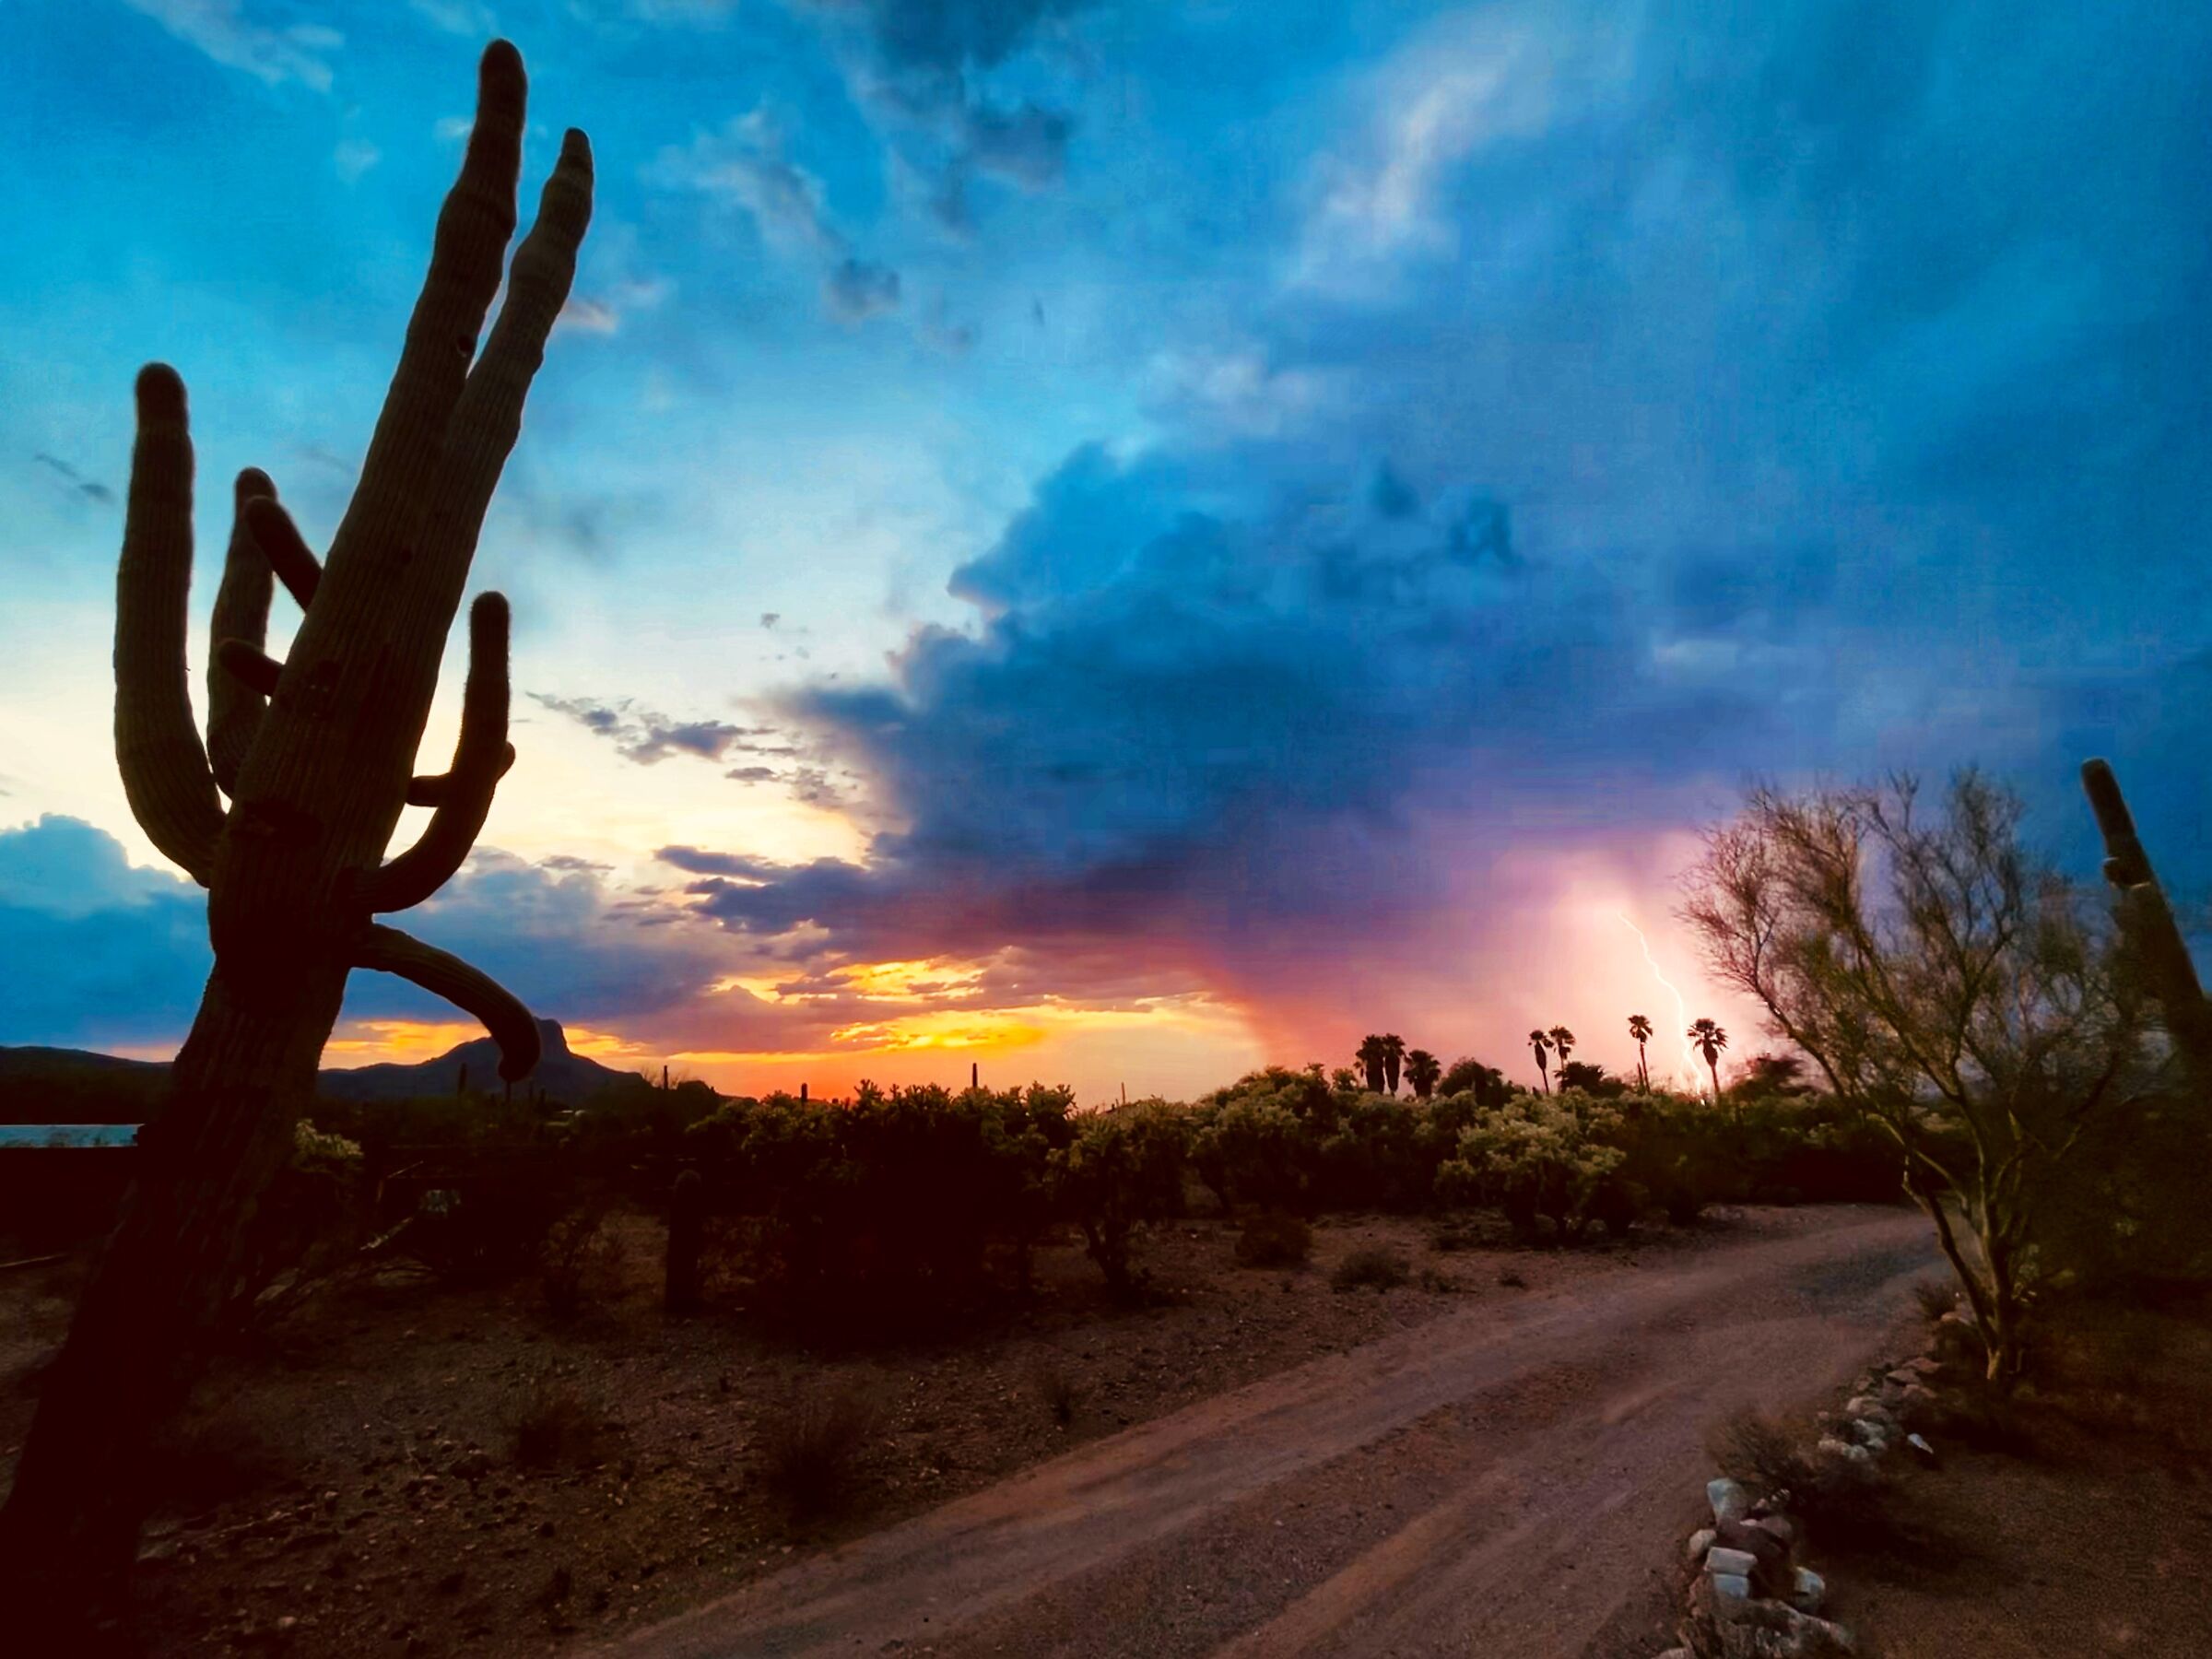 Sunset in Tucson...